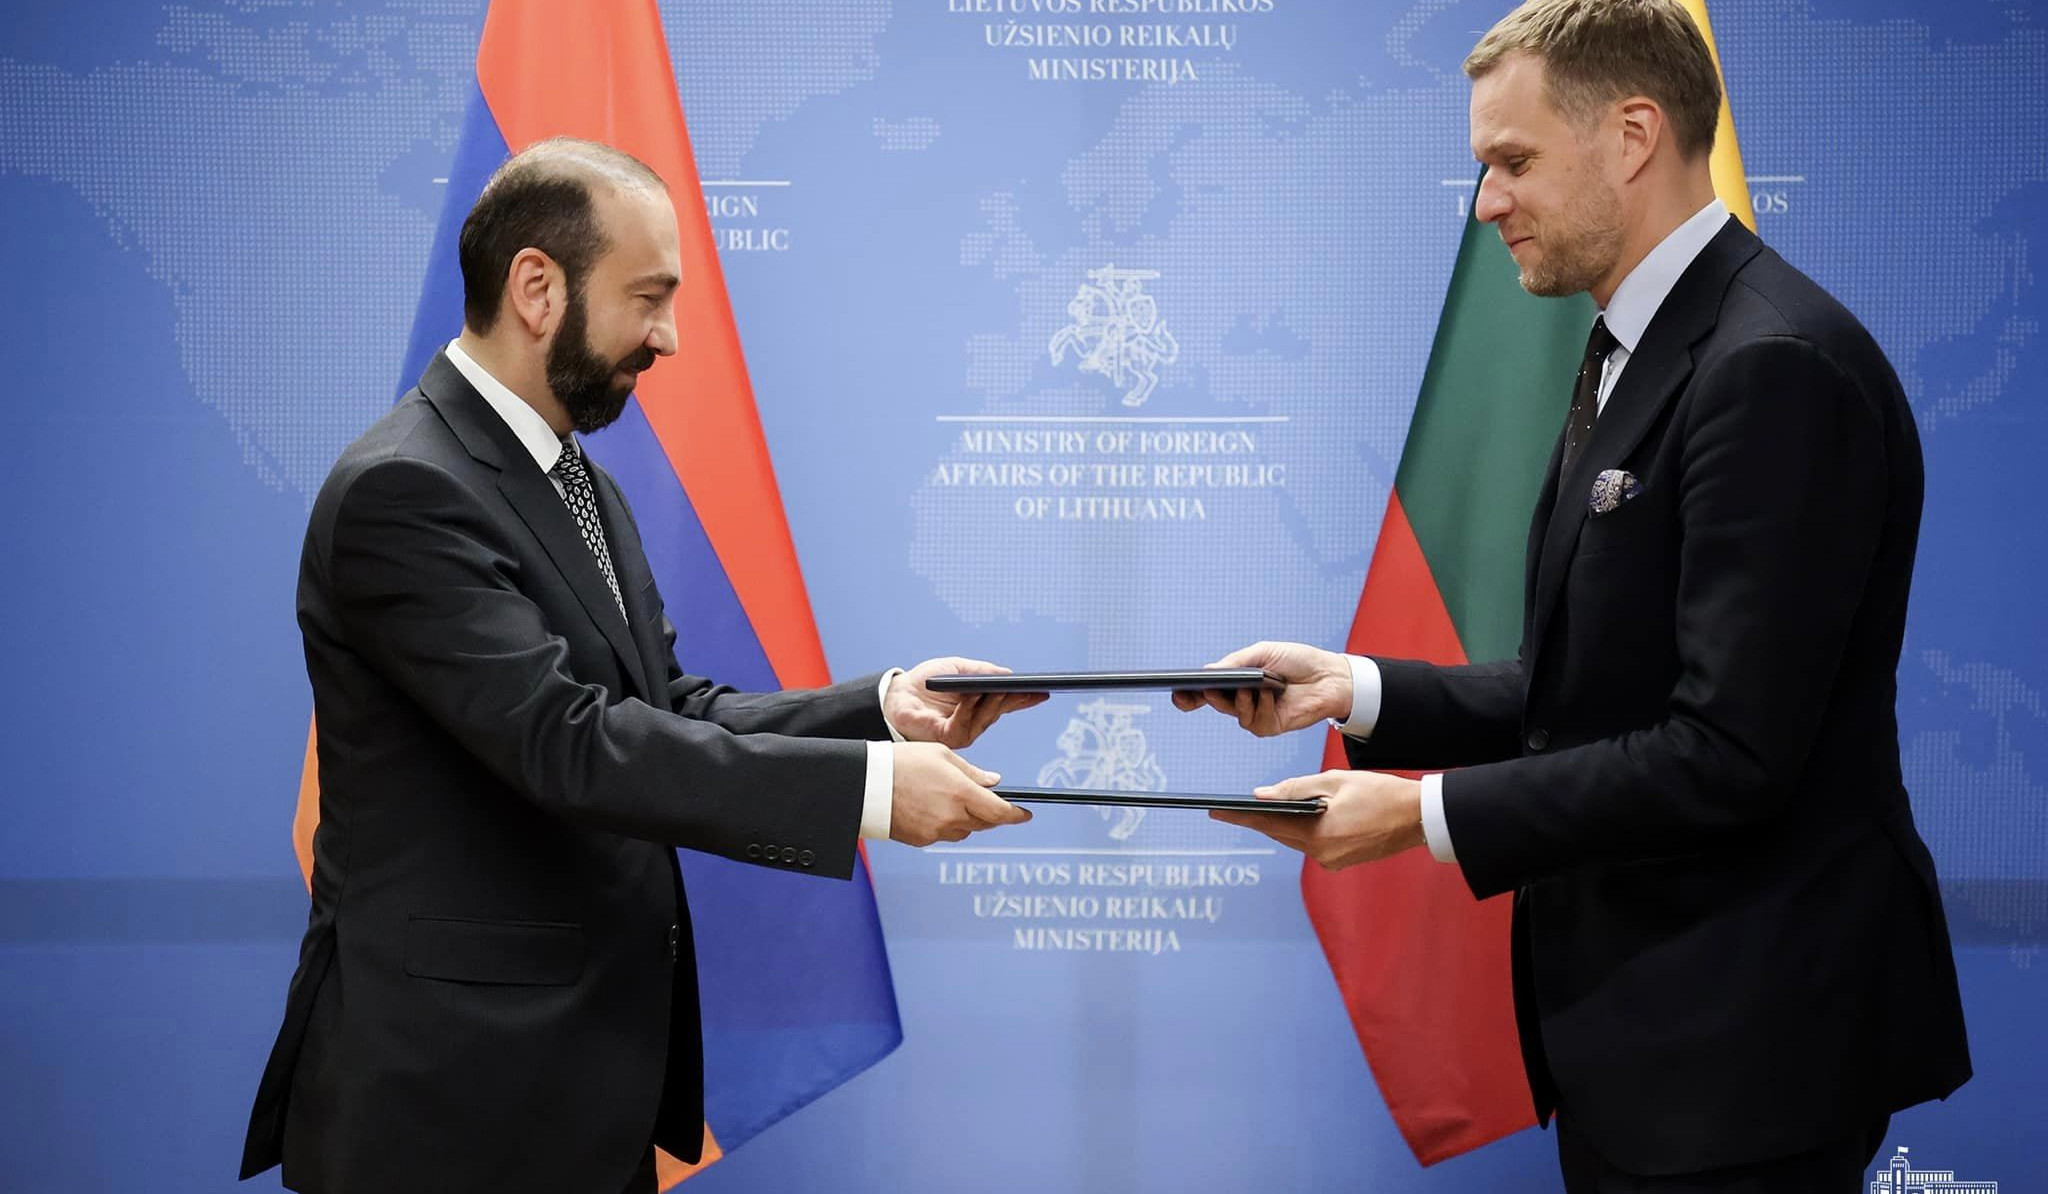 Փոխըմբռնման հուշագիր է ստորագրվել Լիտվայի և ՀՀ ԱԳՆ-ների միջև ԵՄ-ին առնչվող հարցերի շուրջ համագործակցության մասին